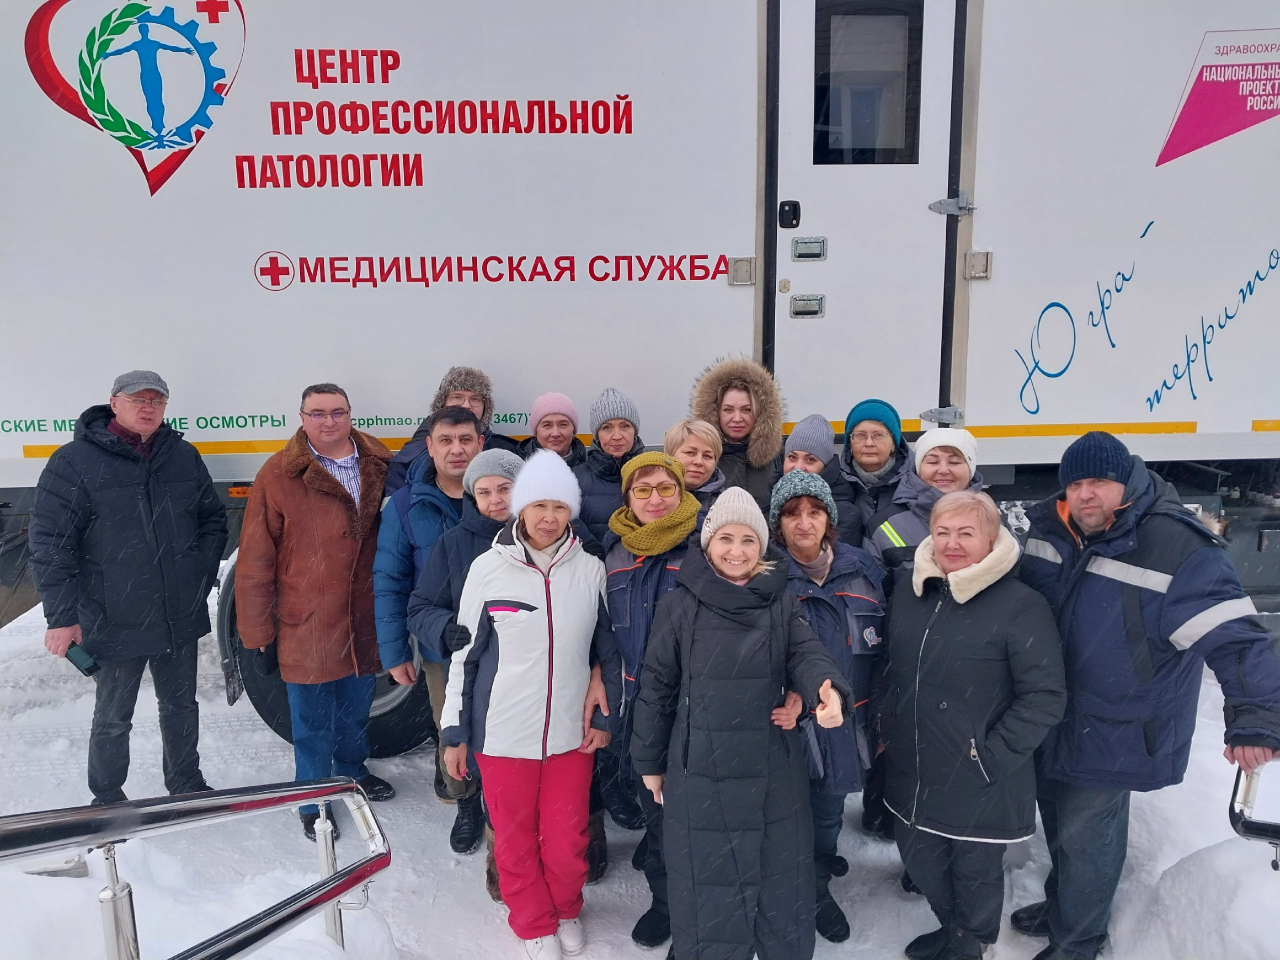 Передвижная поликлиника заканчивает зимнюю командировку по отдалённым поселениям Югры